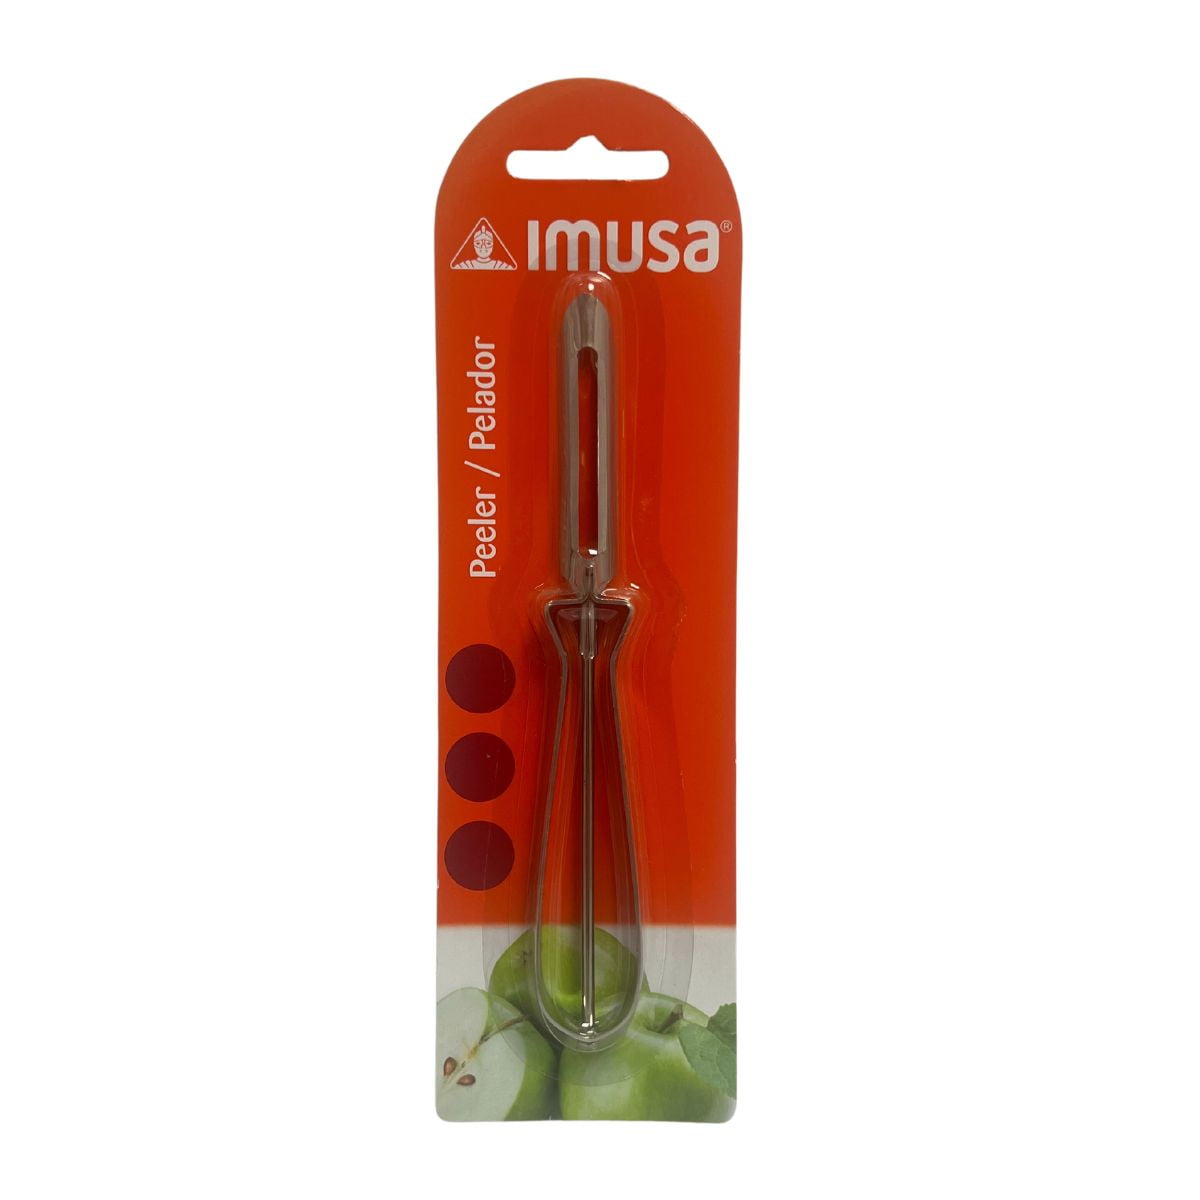 IMUSA IMUSA Stainless Steel Vegetable Peeler - IMUSA